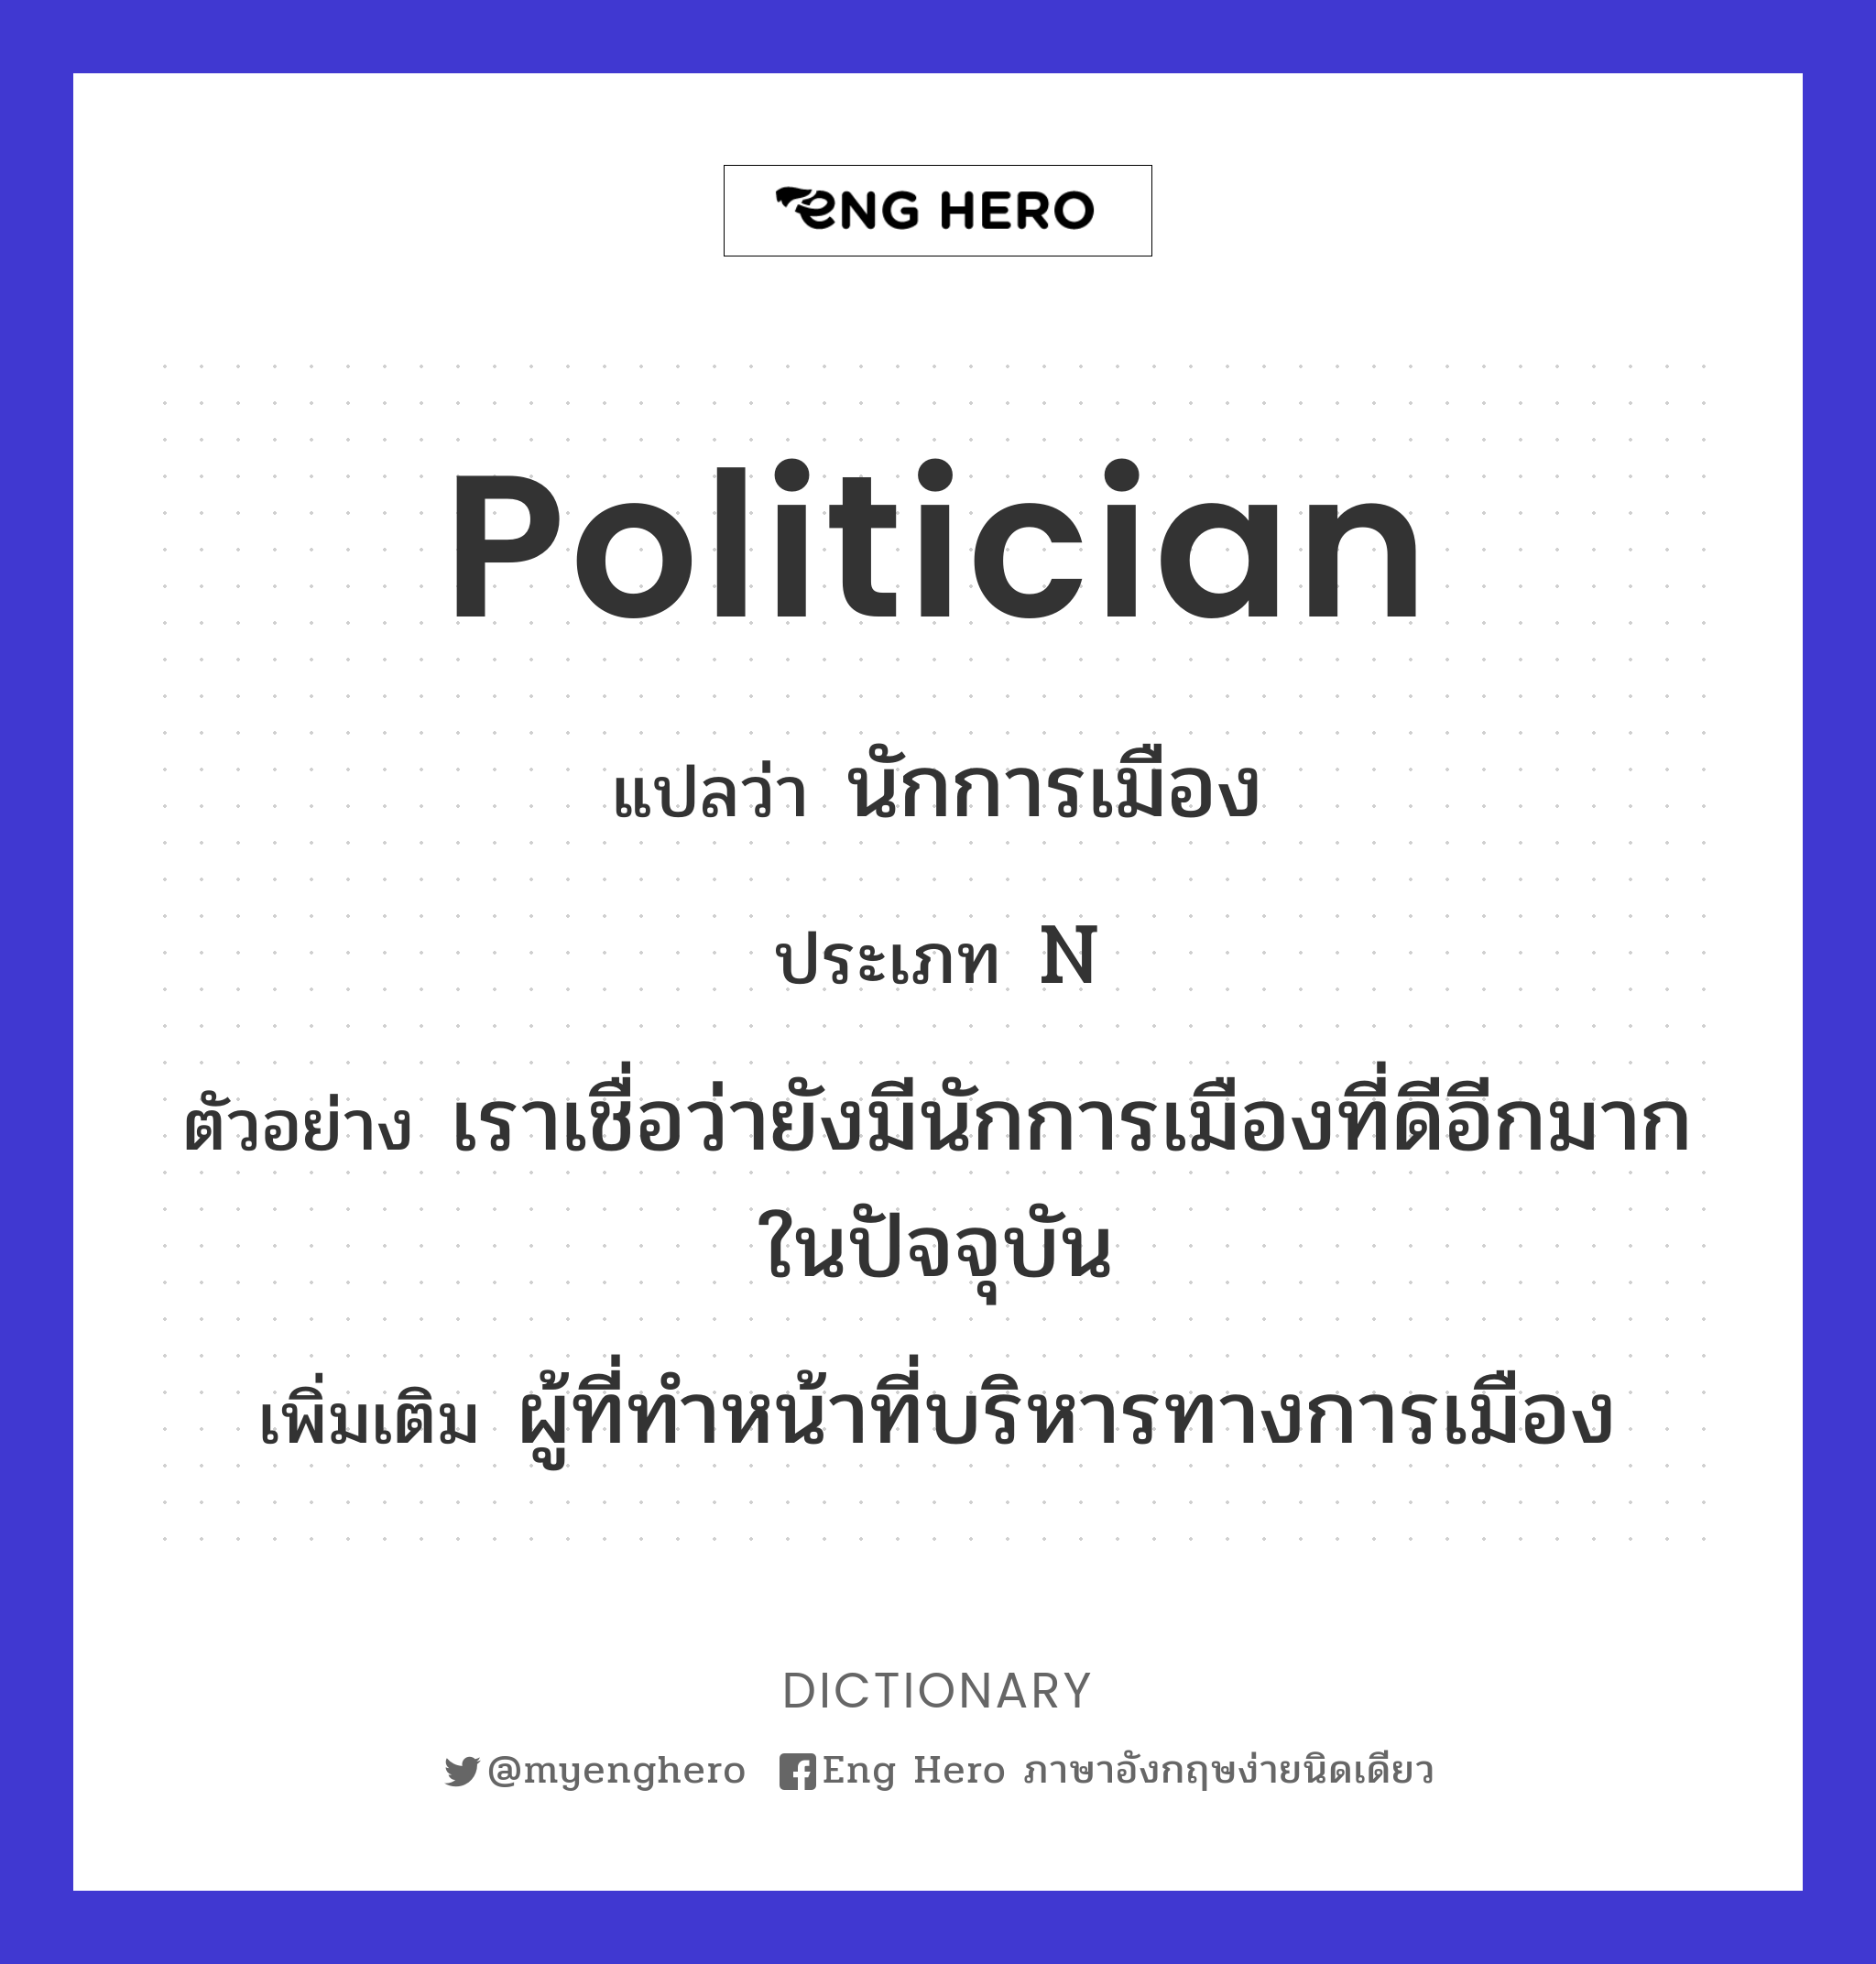 politician